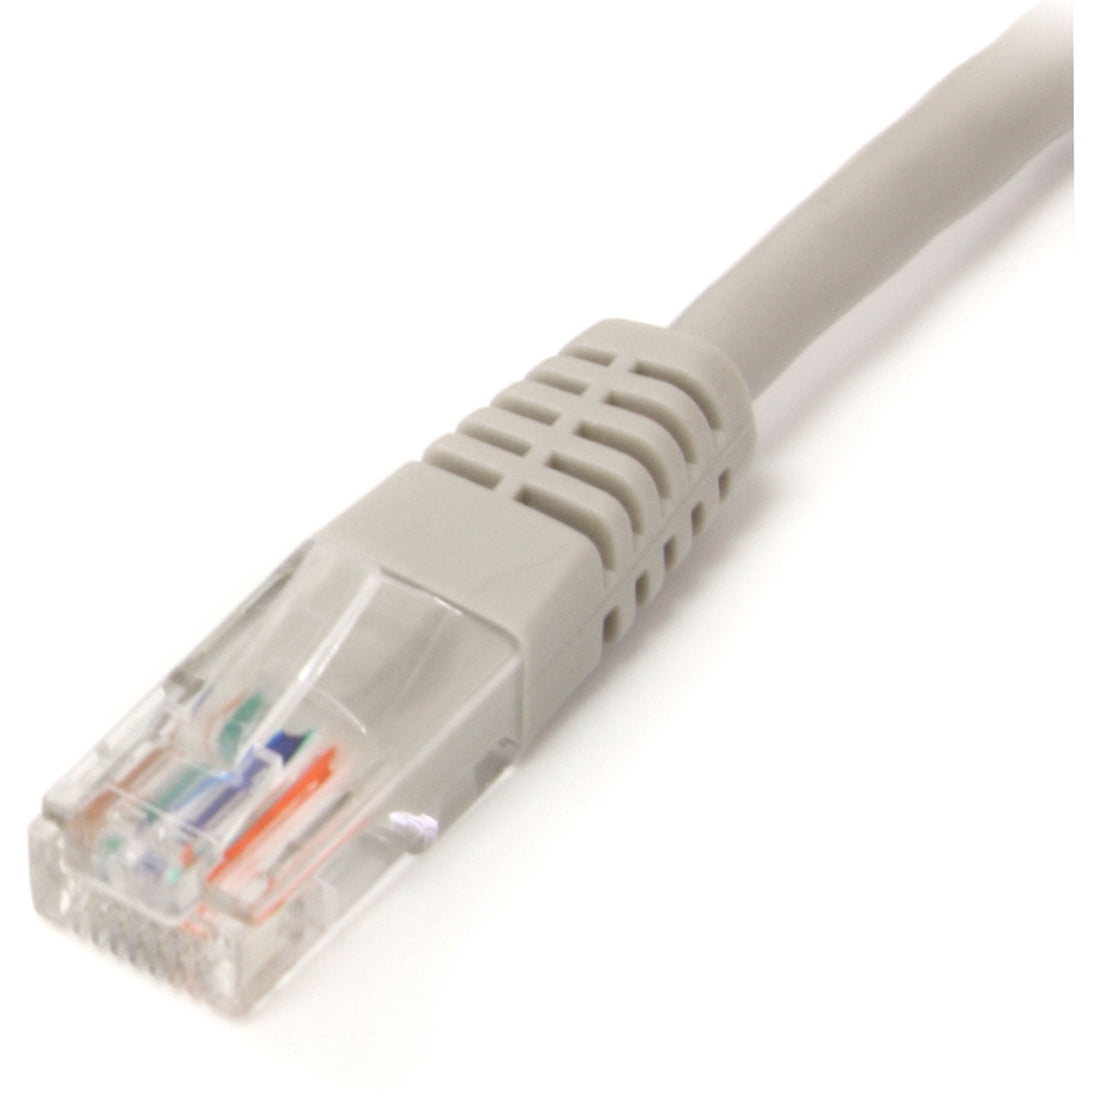 Marca: StarTech.com   Cable de conexión UTP Cat5e moldeado gris de 10 pies con garantía de por vida conectores de oro de 50 micrones